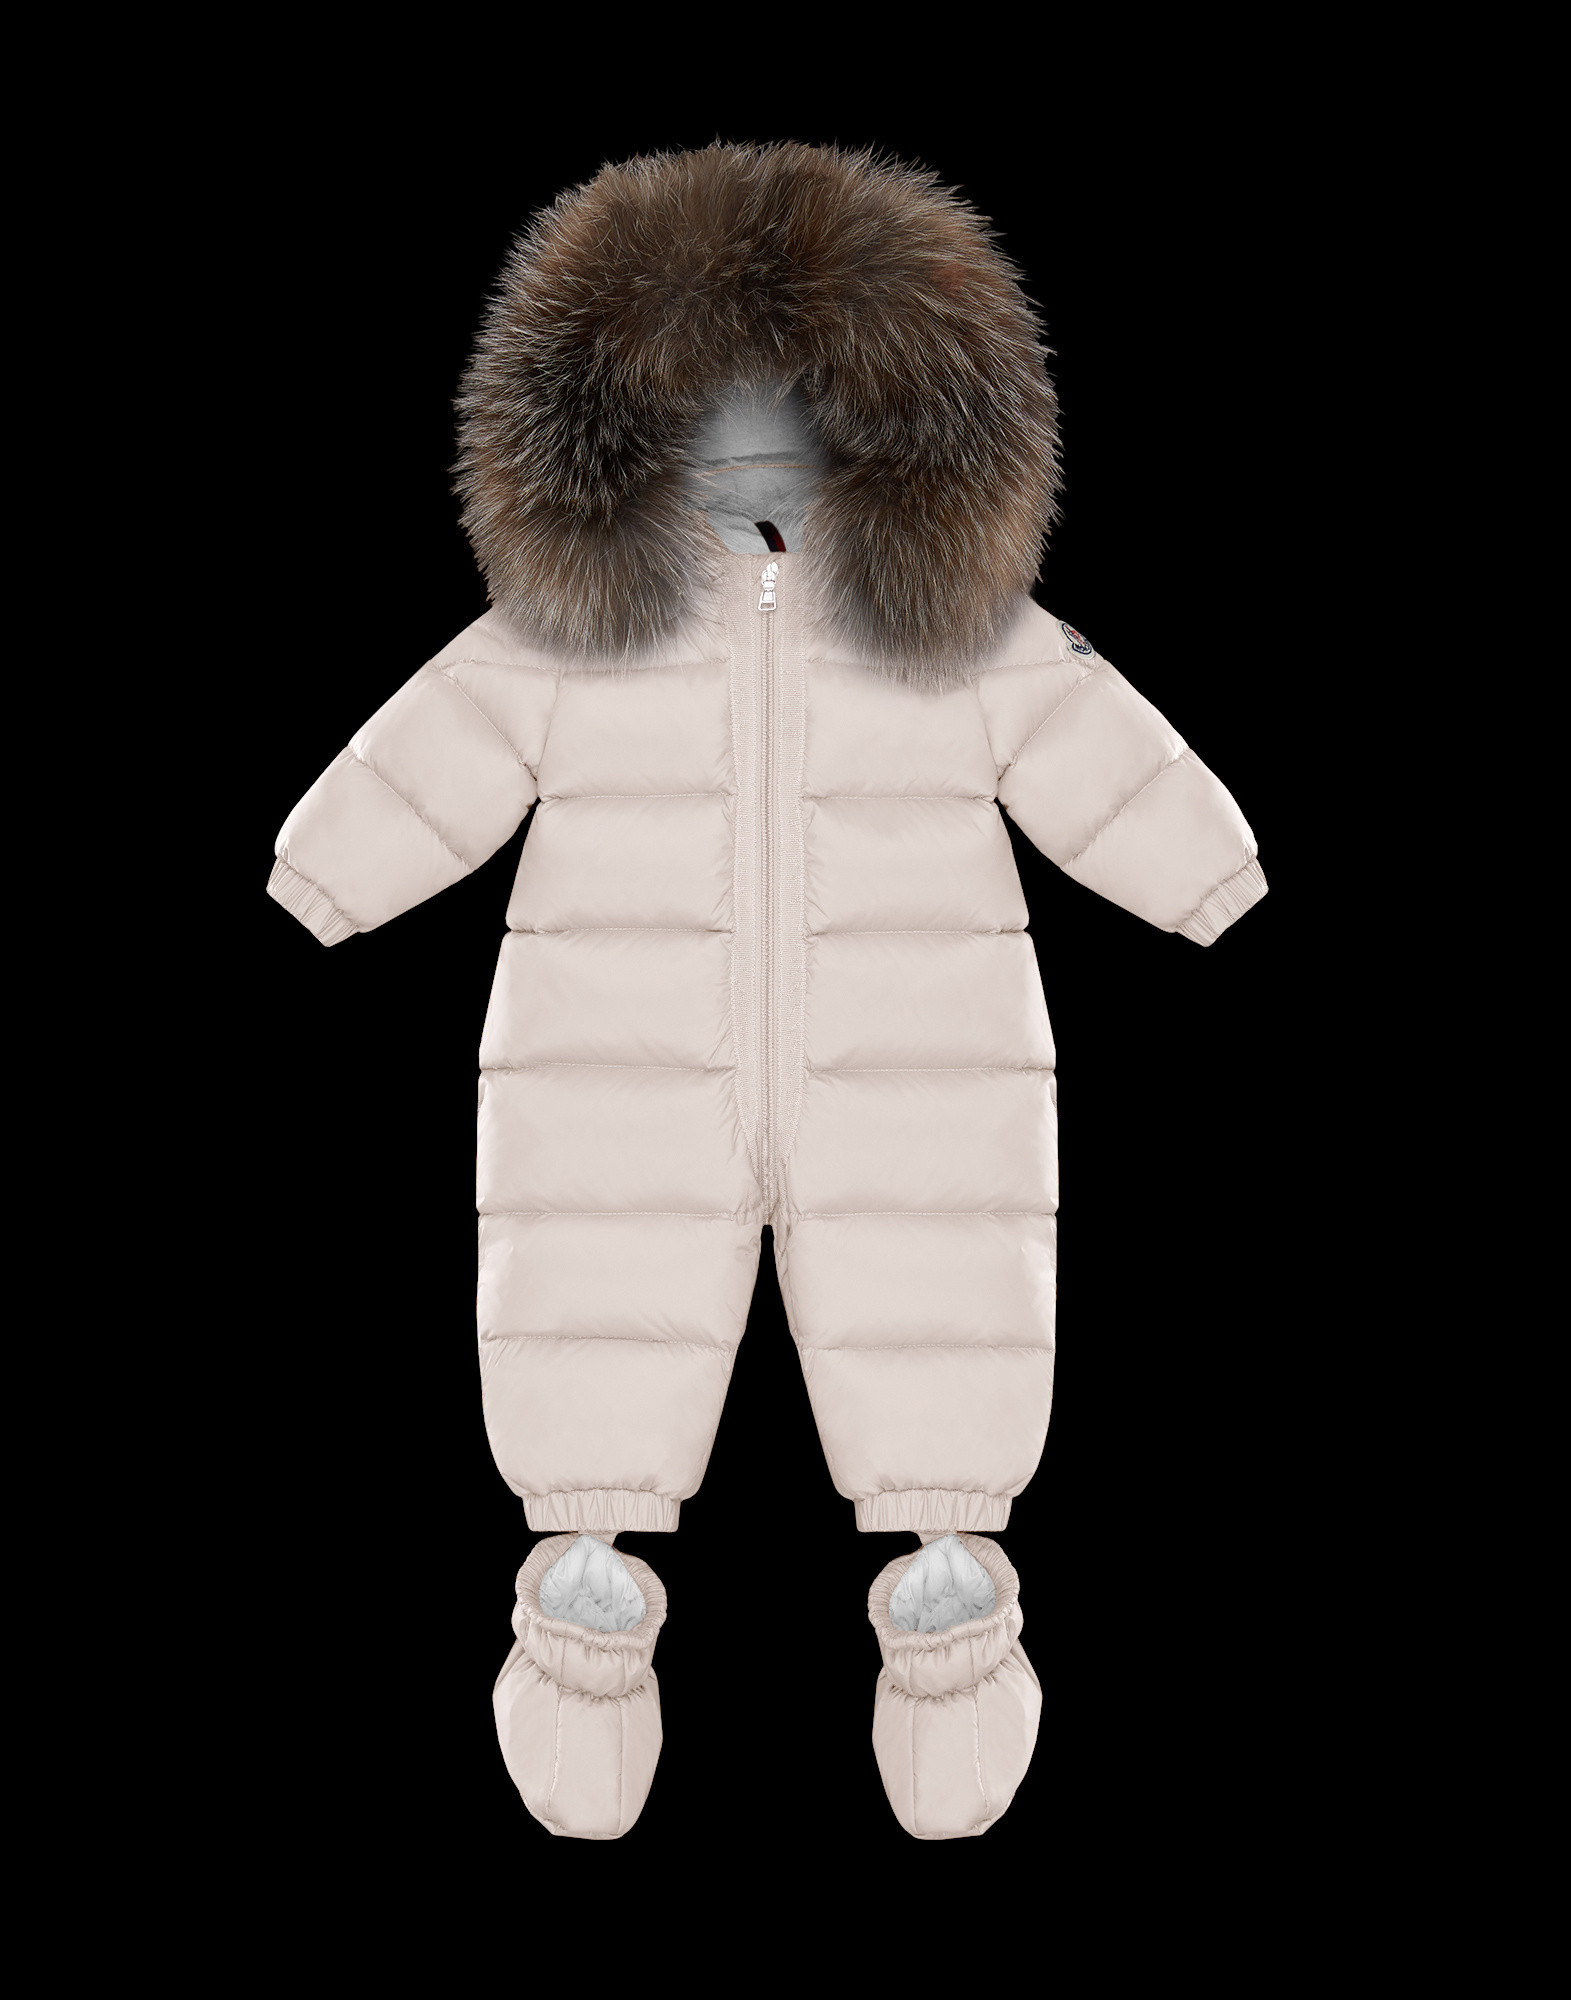 moncler newborn snowsuit